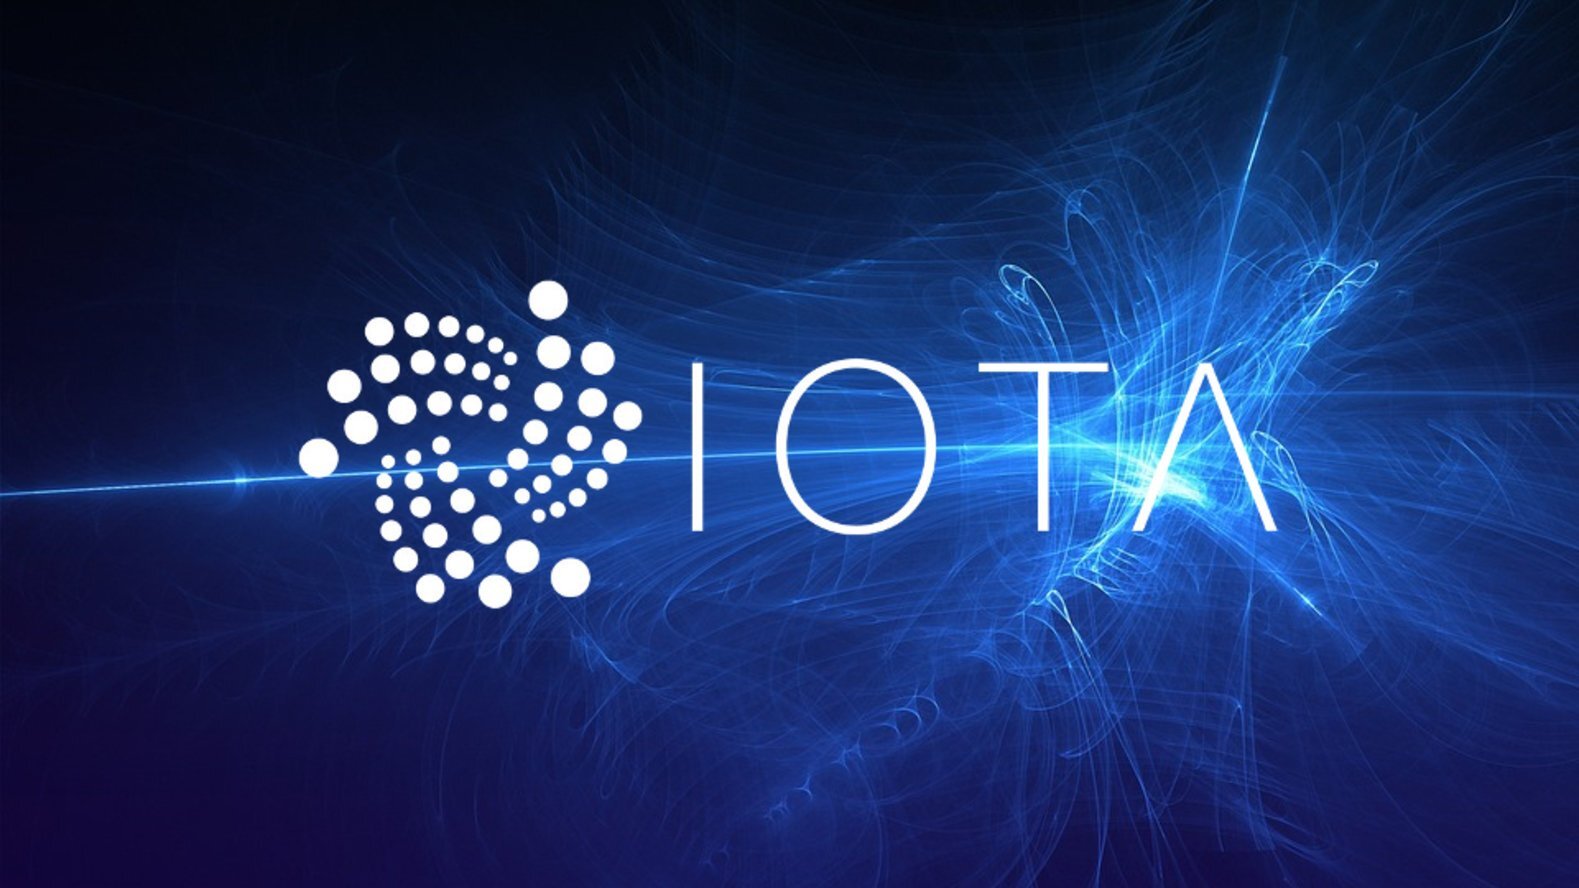 Iota chuẩn bị ra mắt nền tảng hợp đồng thông minh phi tập trung mở rộng hệ sinh thái Web3